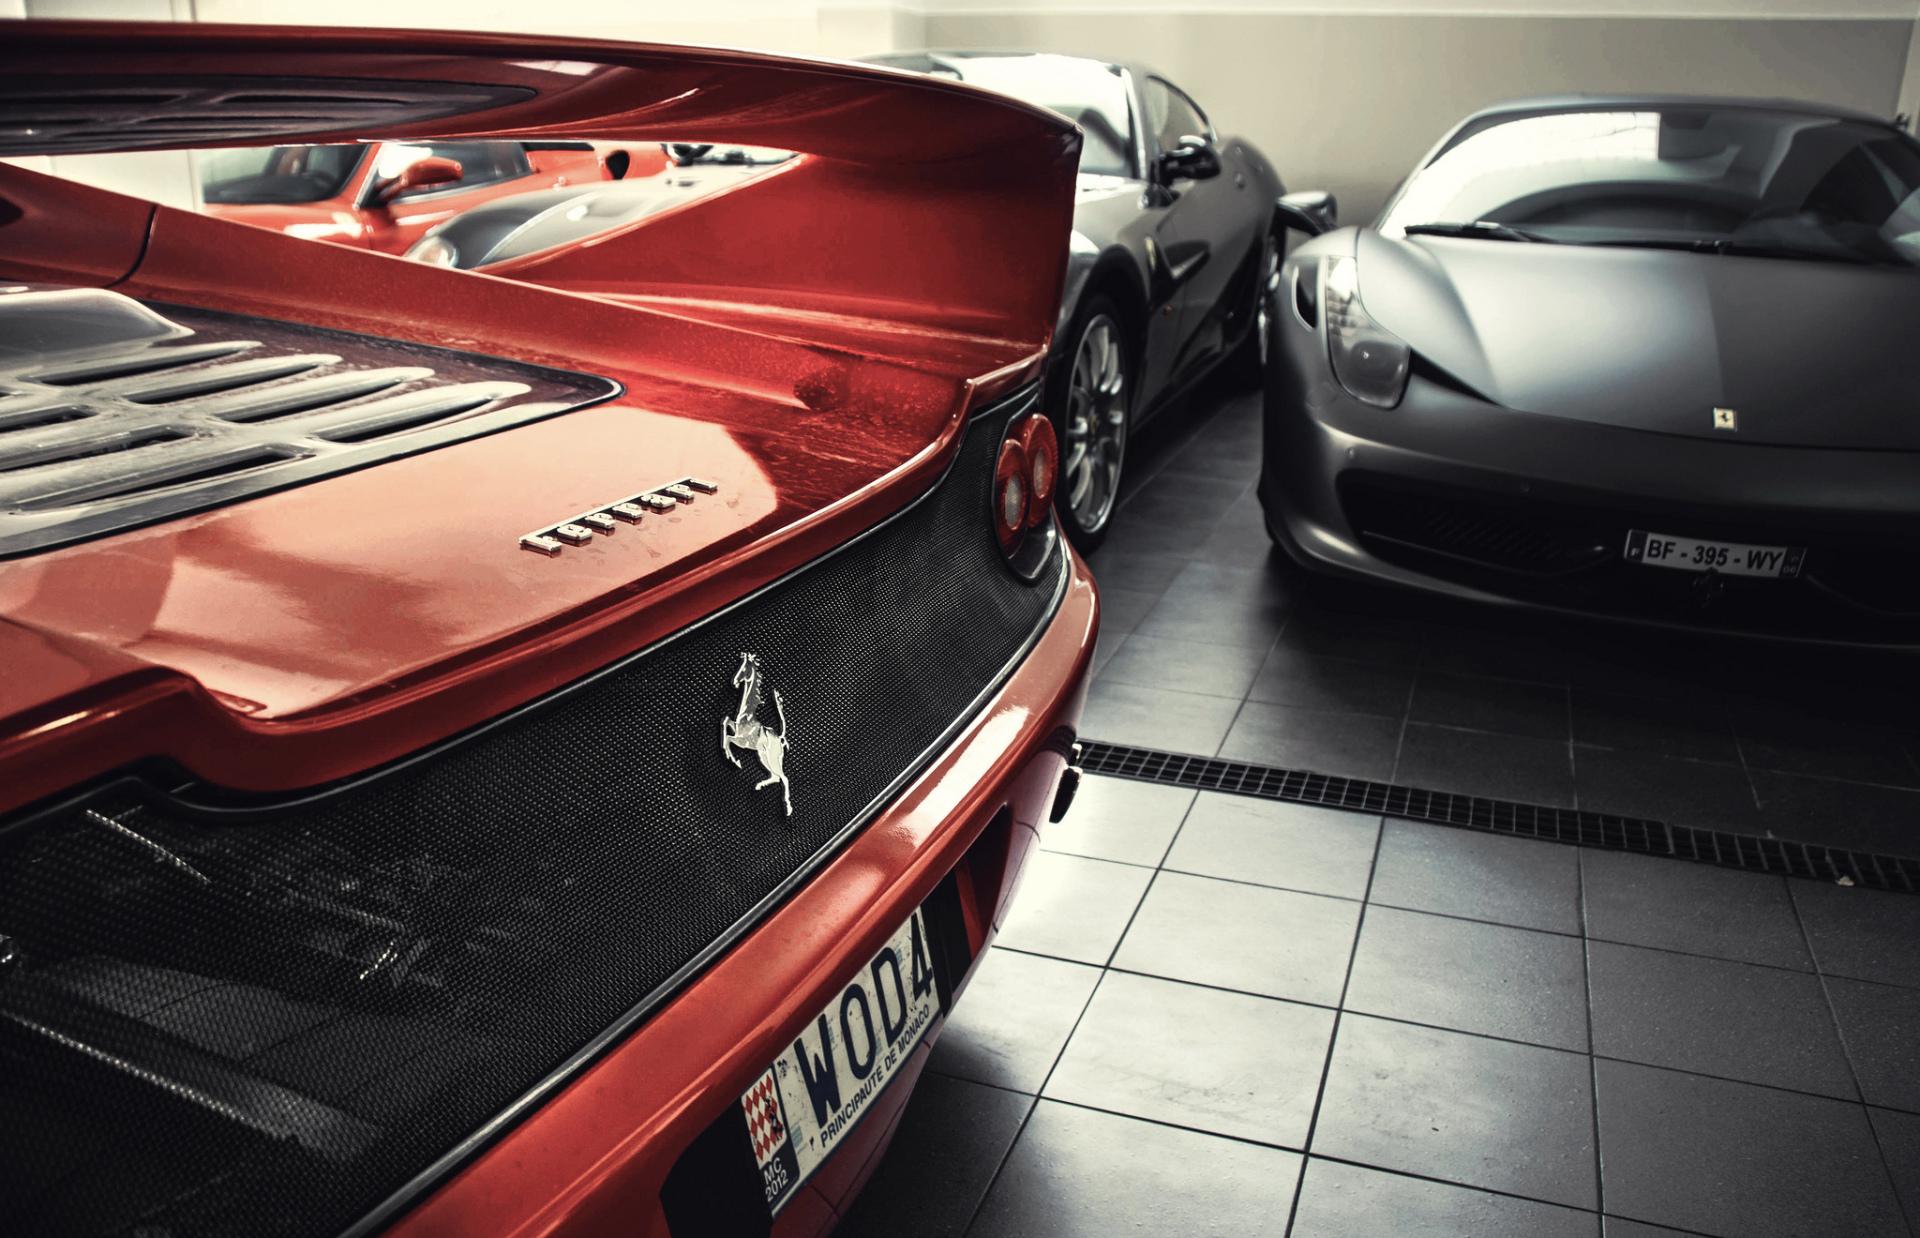 Ferrari F50 at 1152 x 864 size wallpapers HD quality